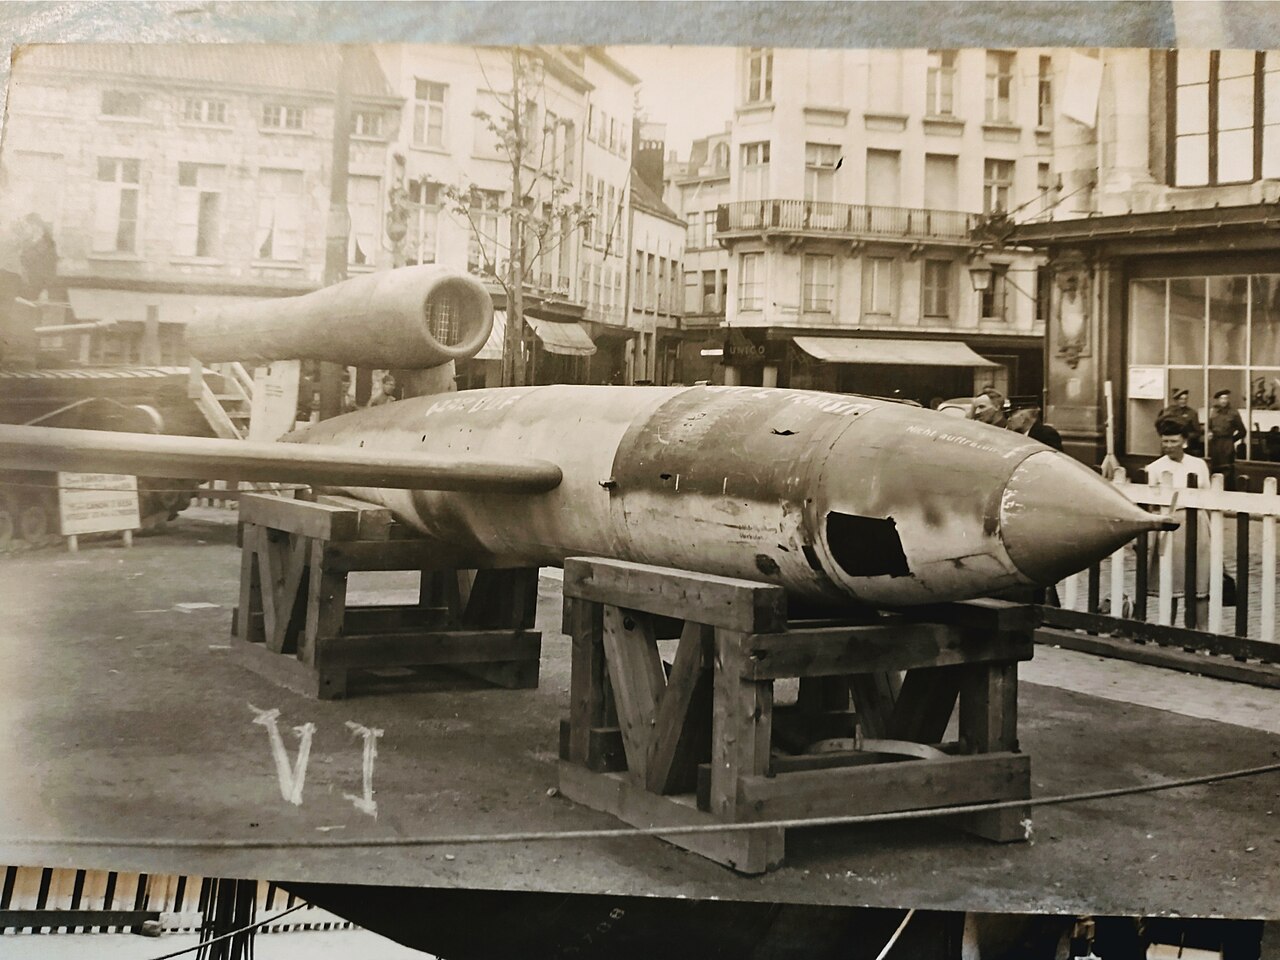 V-1 flying bomb - Wikipedia